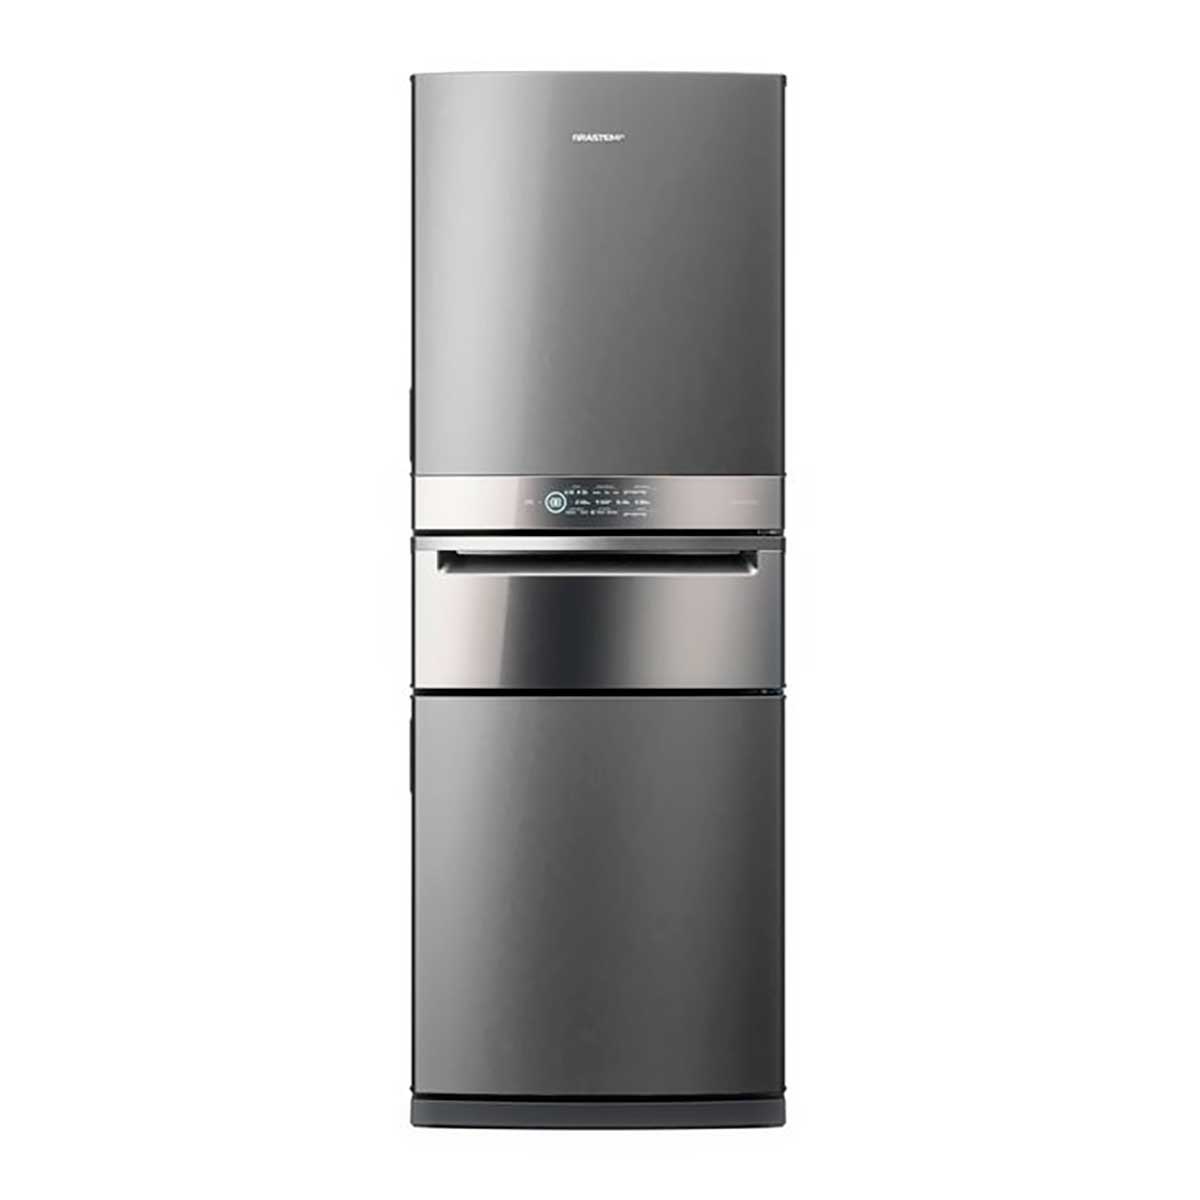 refrigerador-brastemp-frost-free-3-portas-inverse-bry59bk-419-l-inox-220v-1.jpg